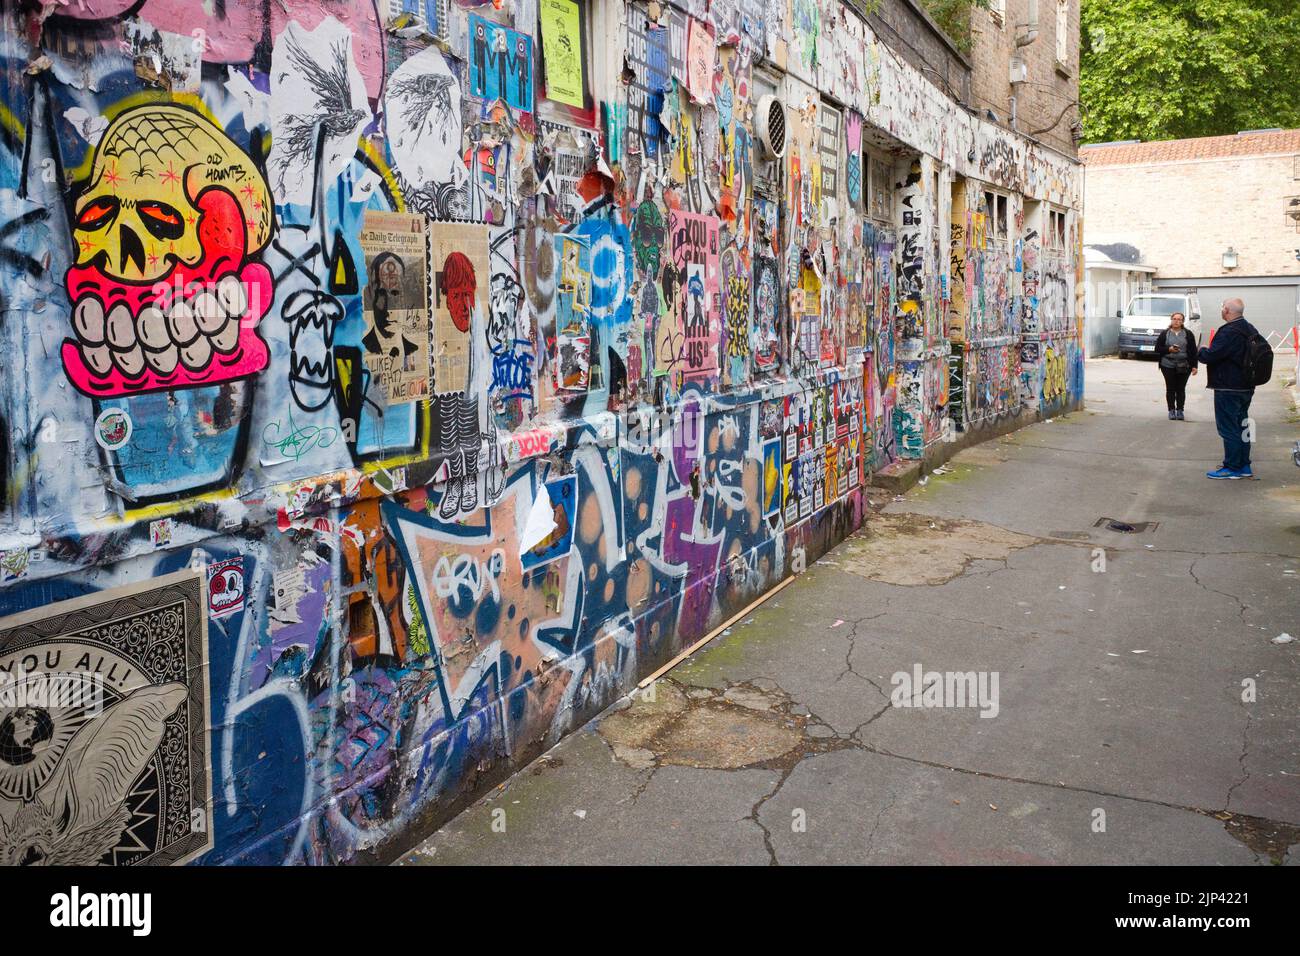 Deux photographes regardant un mur d'images graffitti au large de Brick Lane, Londres Banque D'Images